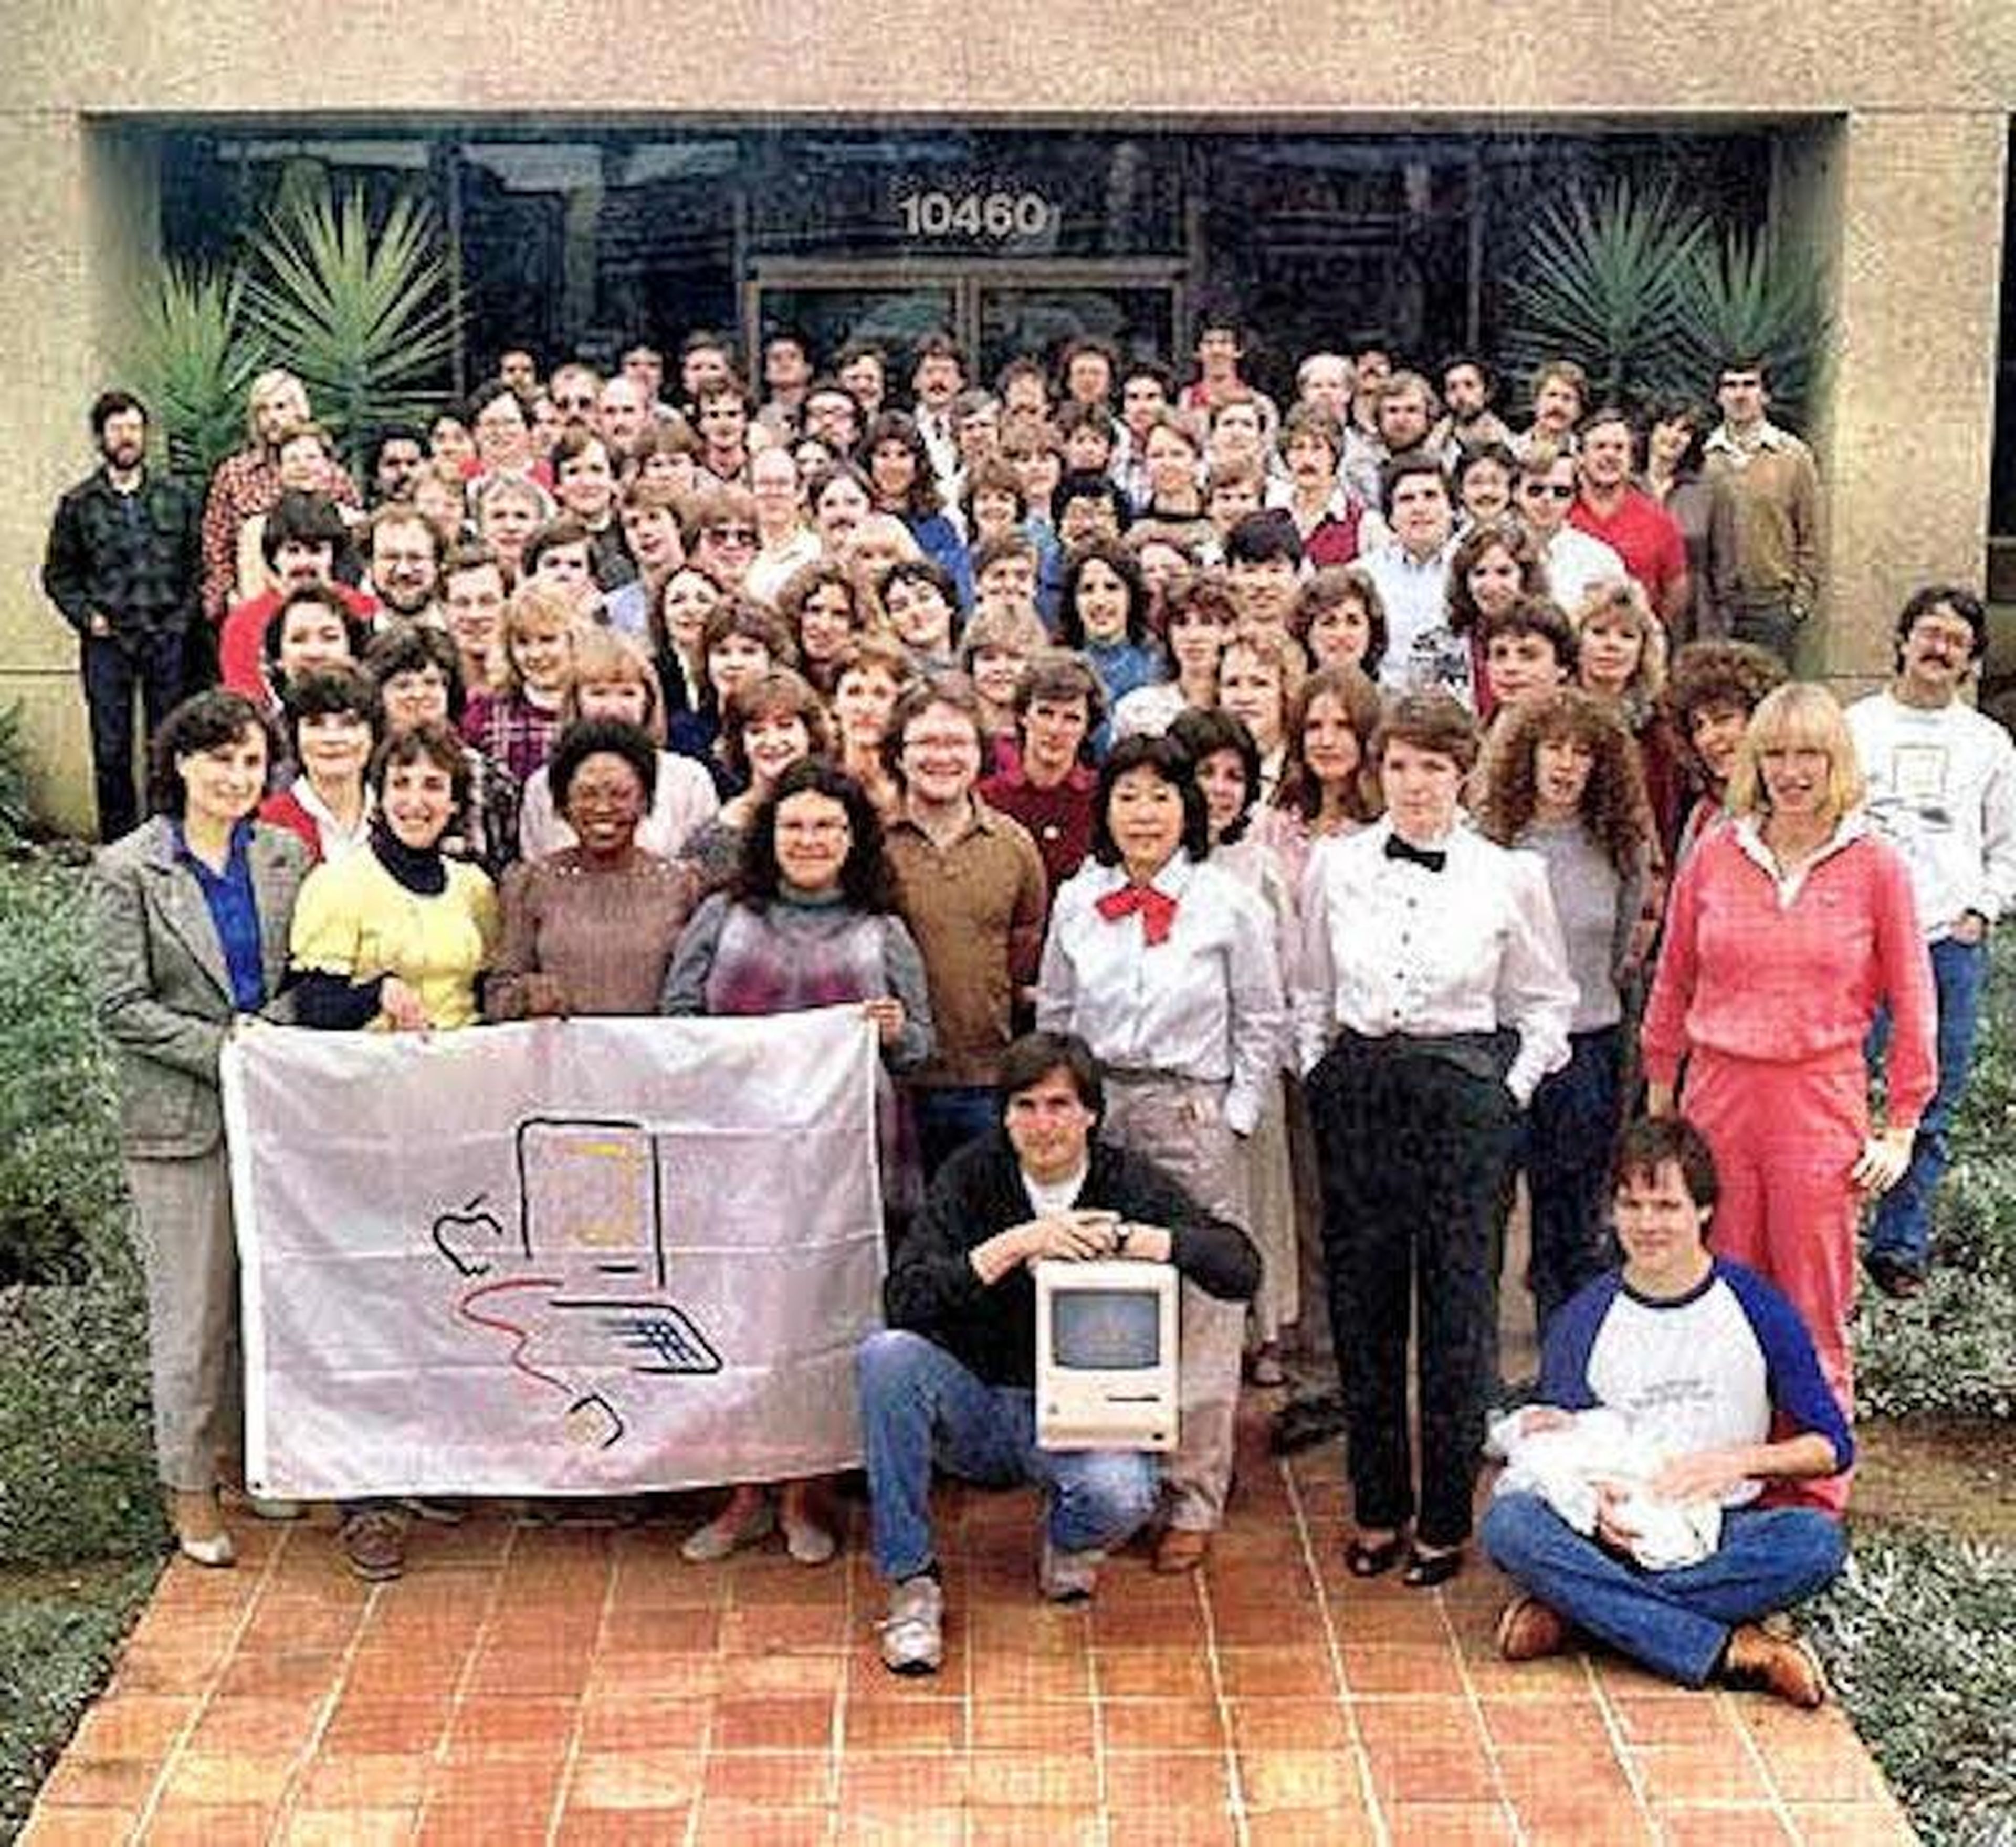 La división del Macintosh reunida frente al edificio Bandley 3 justo antes del lanzamiento del Mac, a finales de 1983.